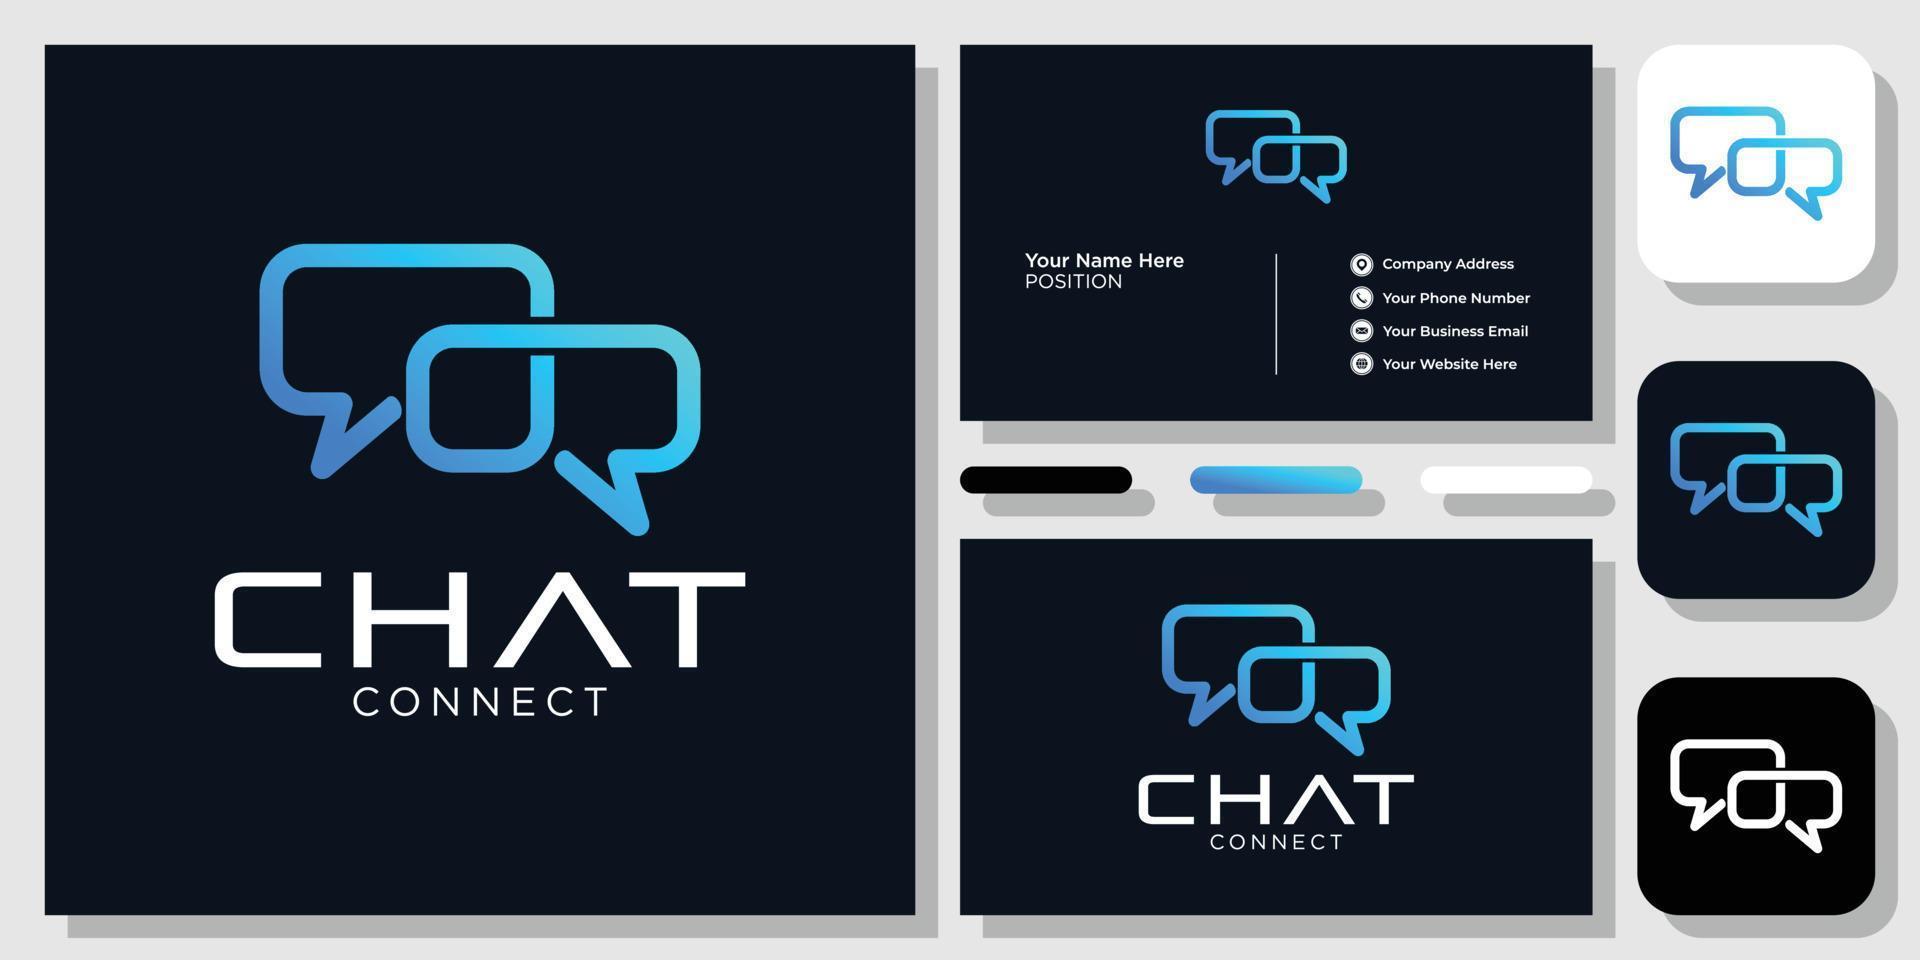 aplicación de conexión de chat teléfono inteligente móvil de comunicación con plantilla de tarjeta de presentación vector